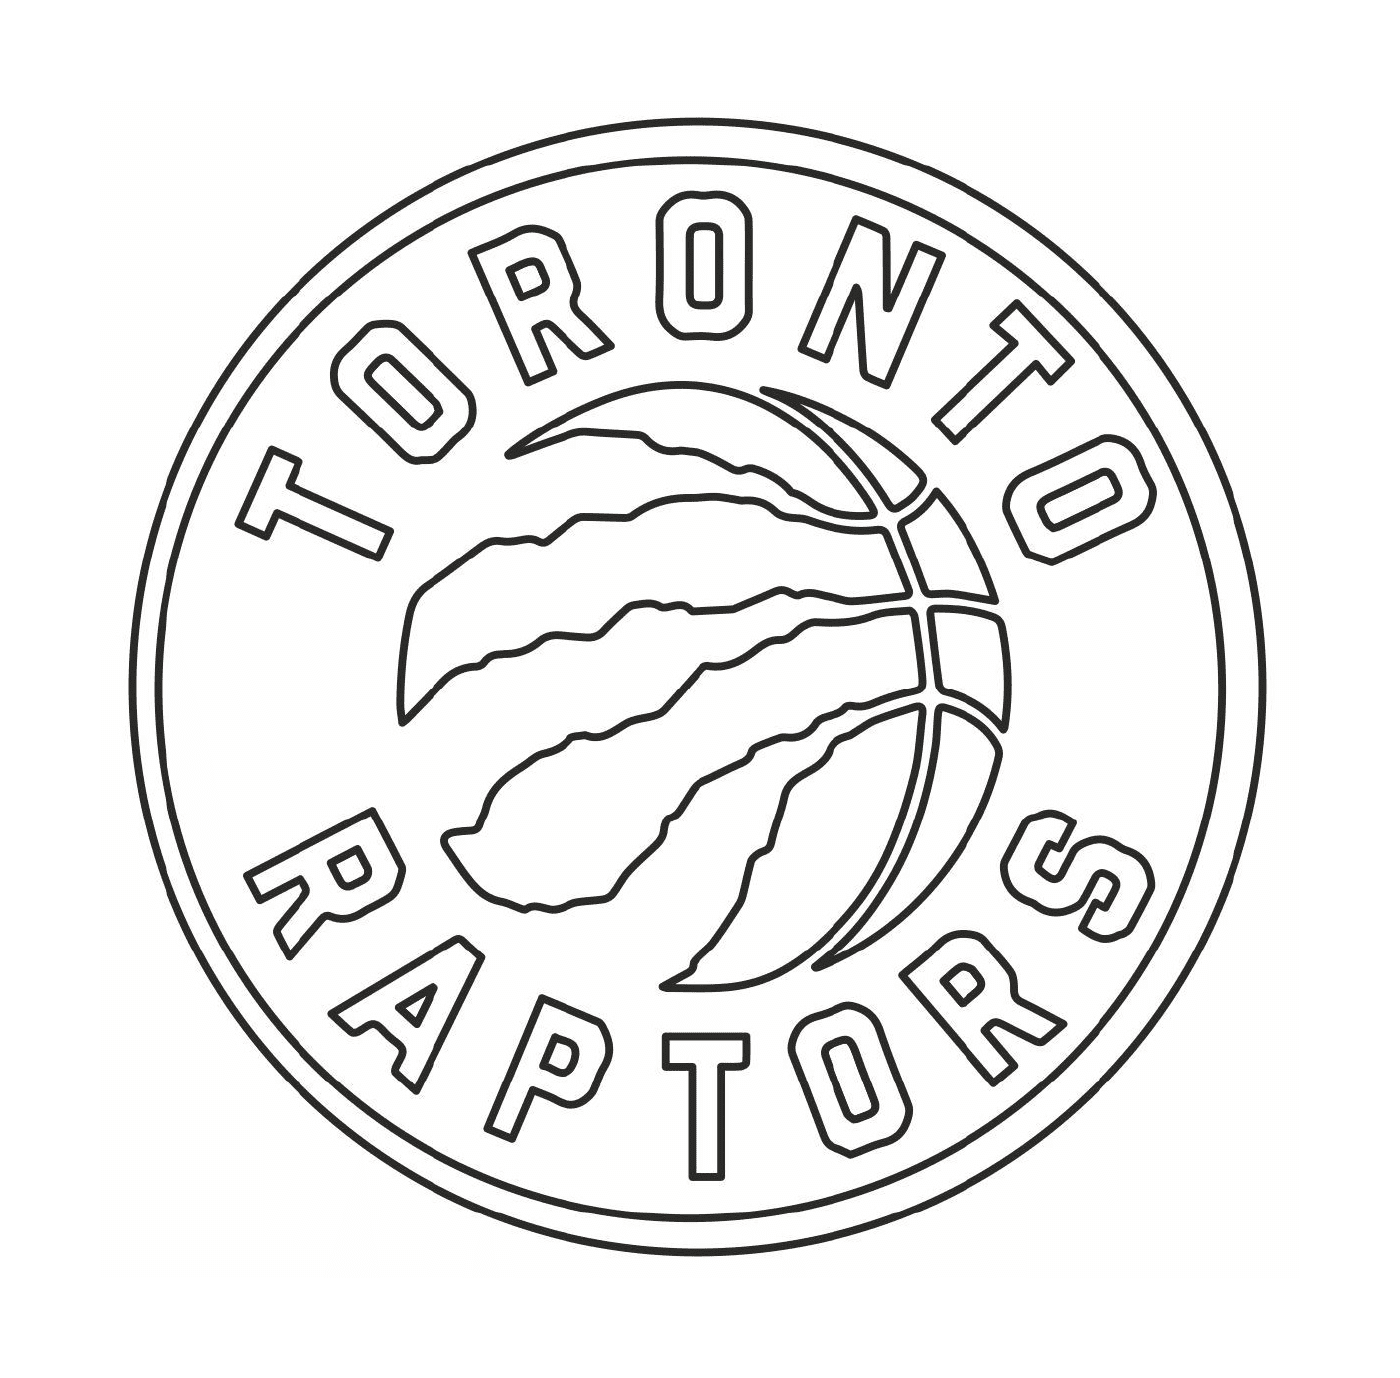  Логотип Торонтского Рапторса, баскетбольная команда 